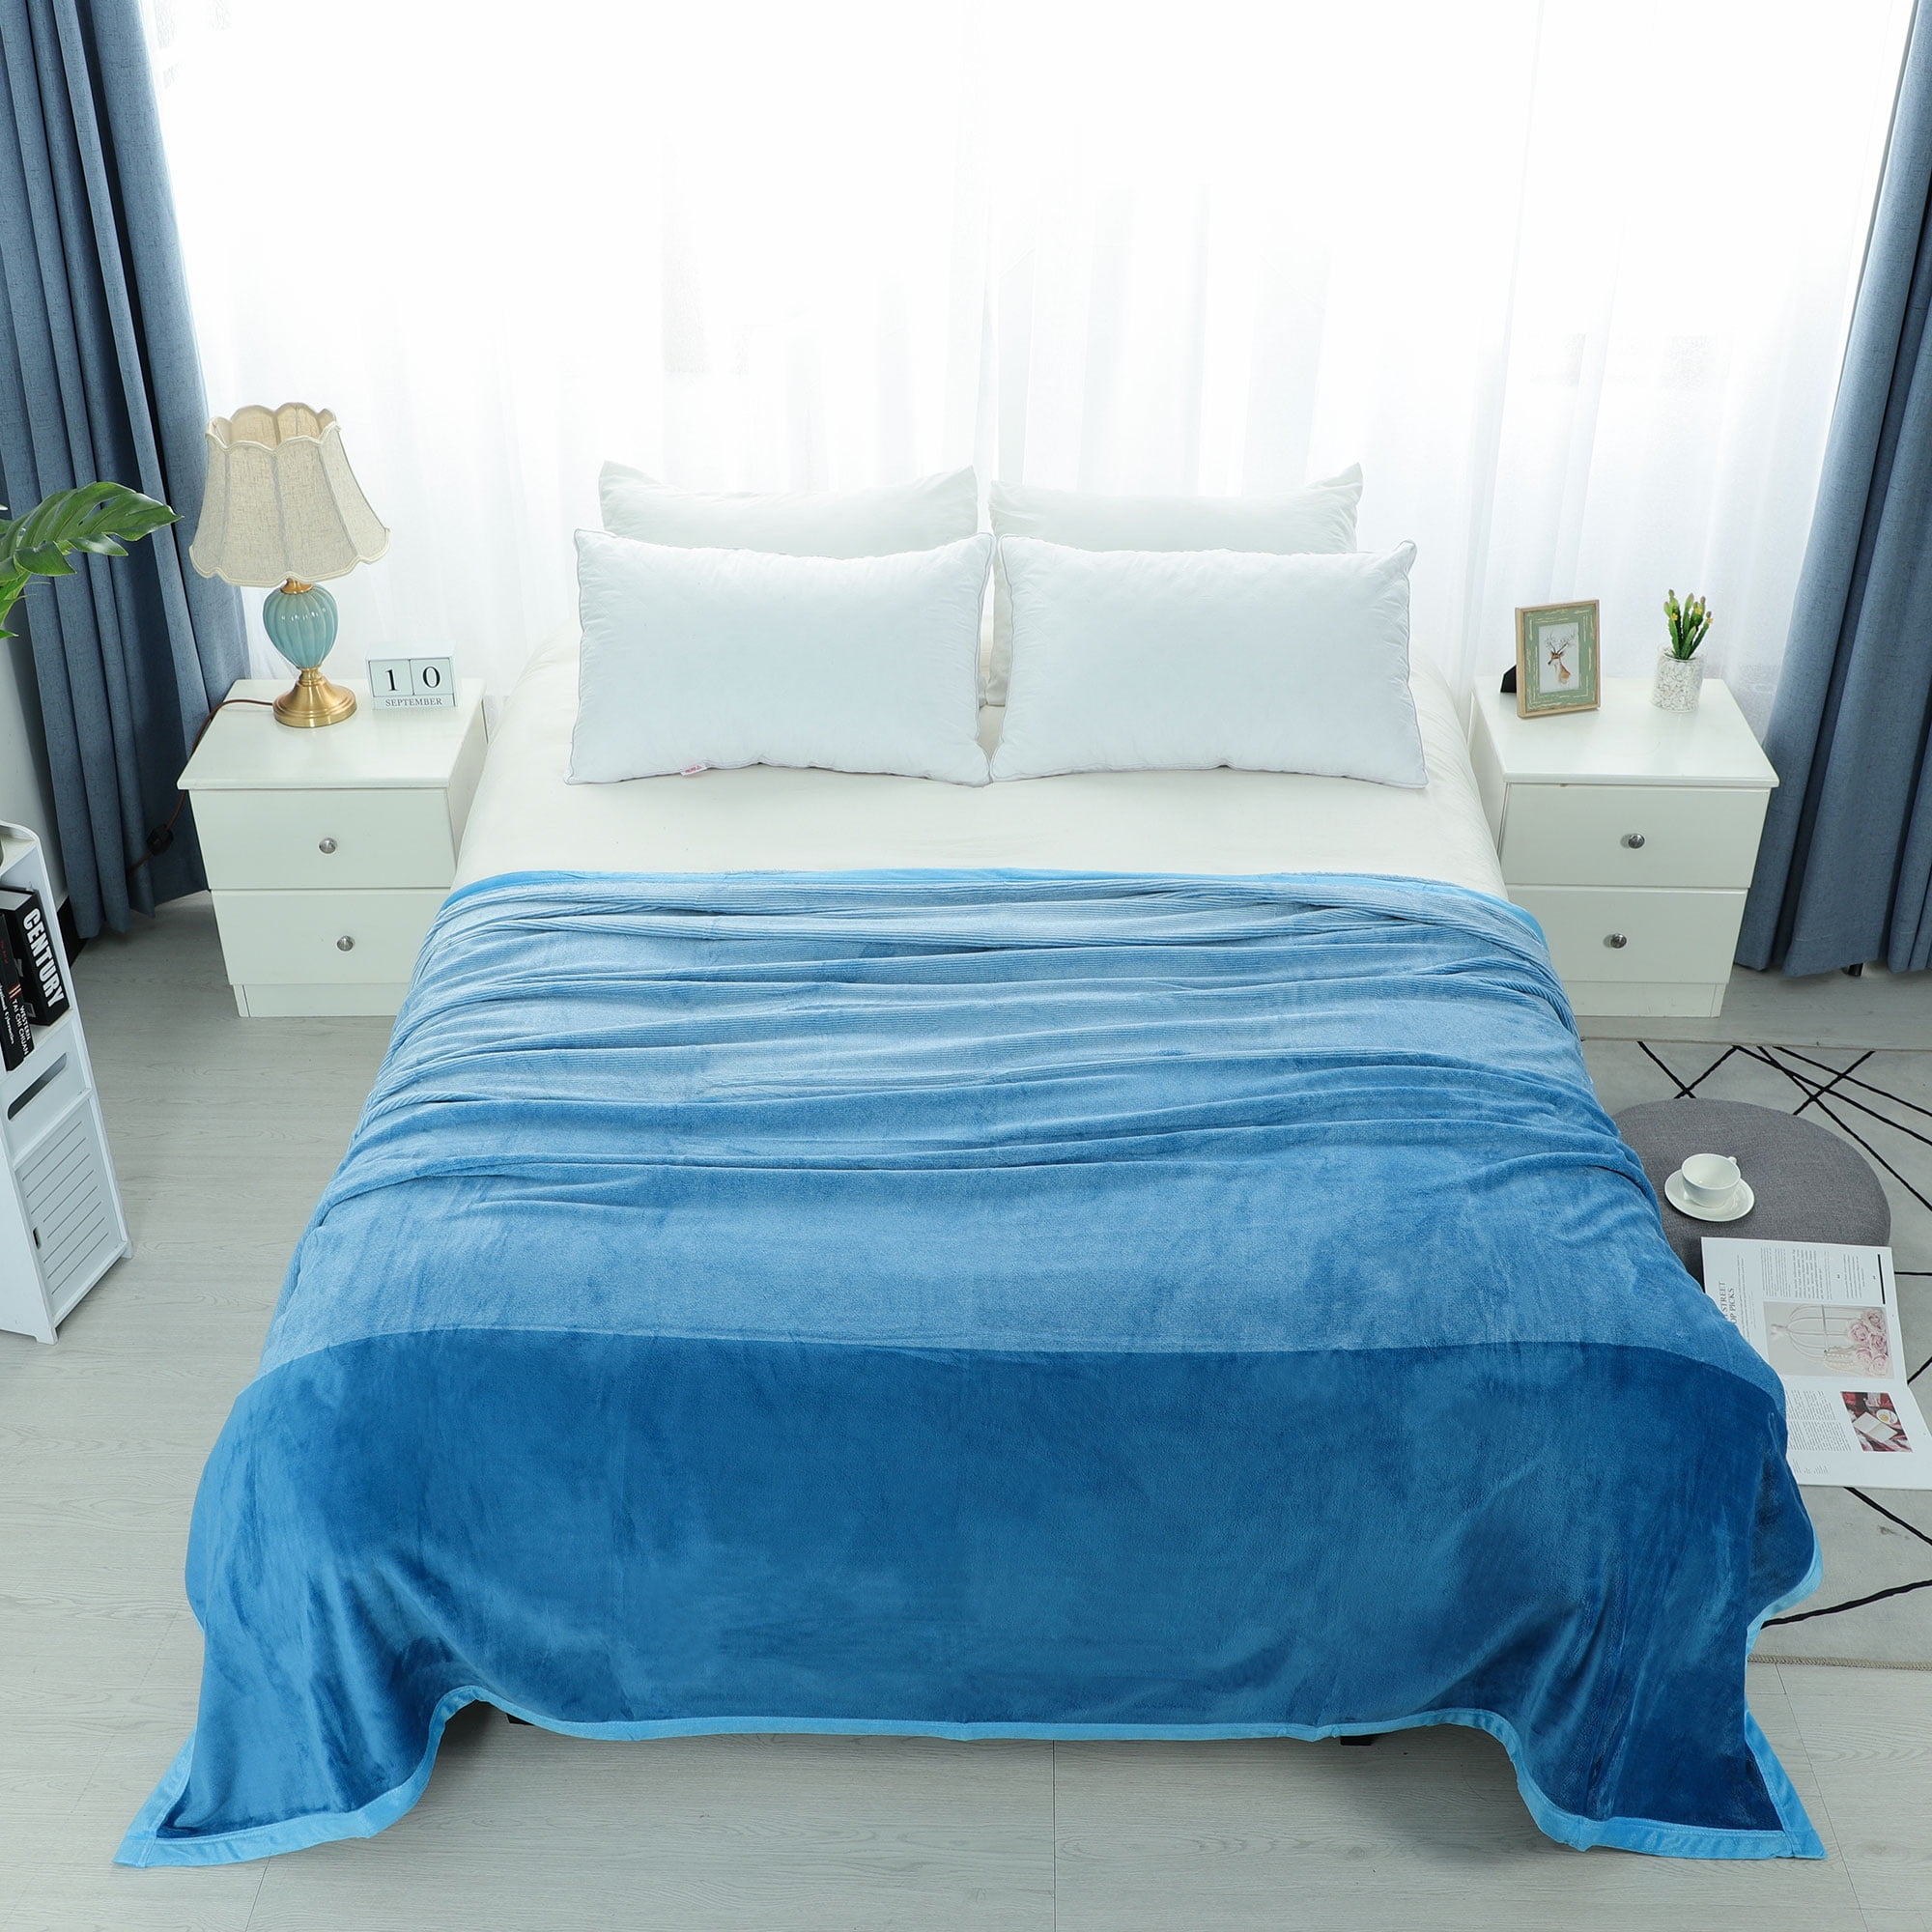 Soft Warm Flannel Fleece Bed Blanket Lightweight Microfiber Gradient